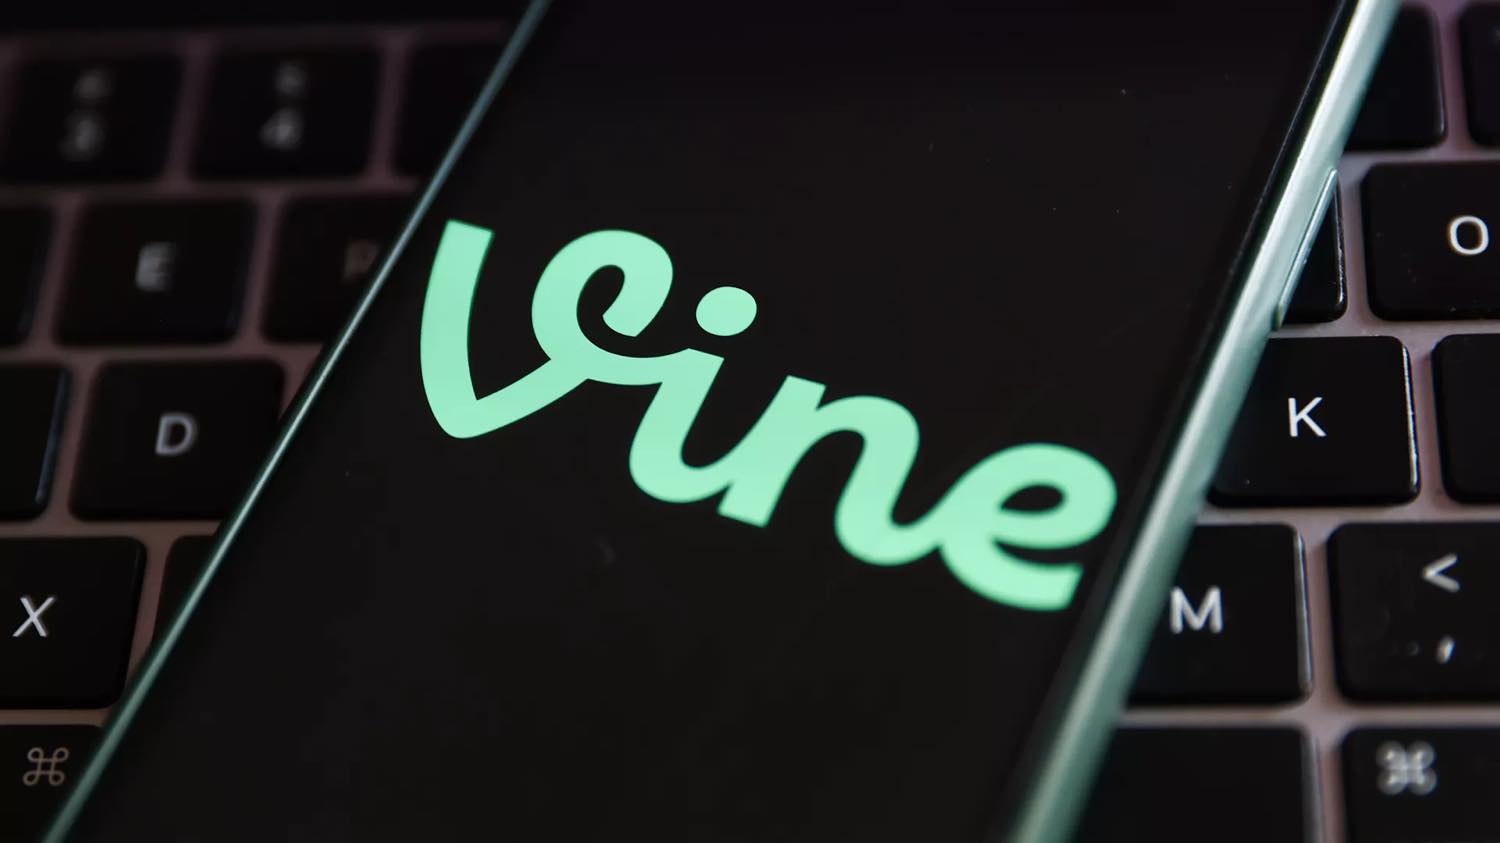 6秒動画サービス｢Vine｣がXで復活する模様